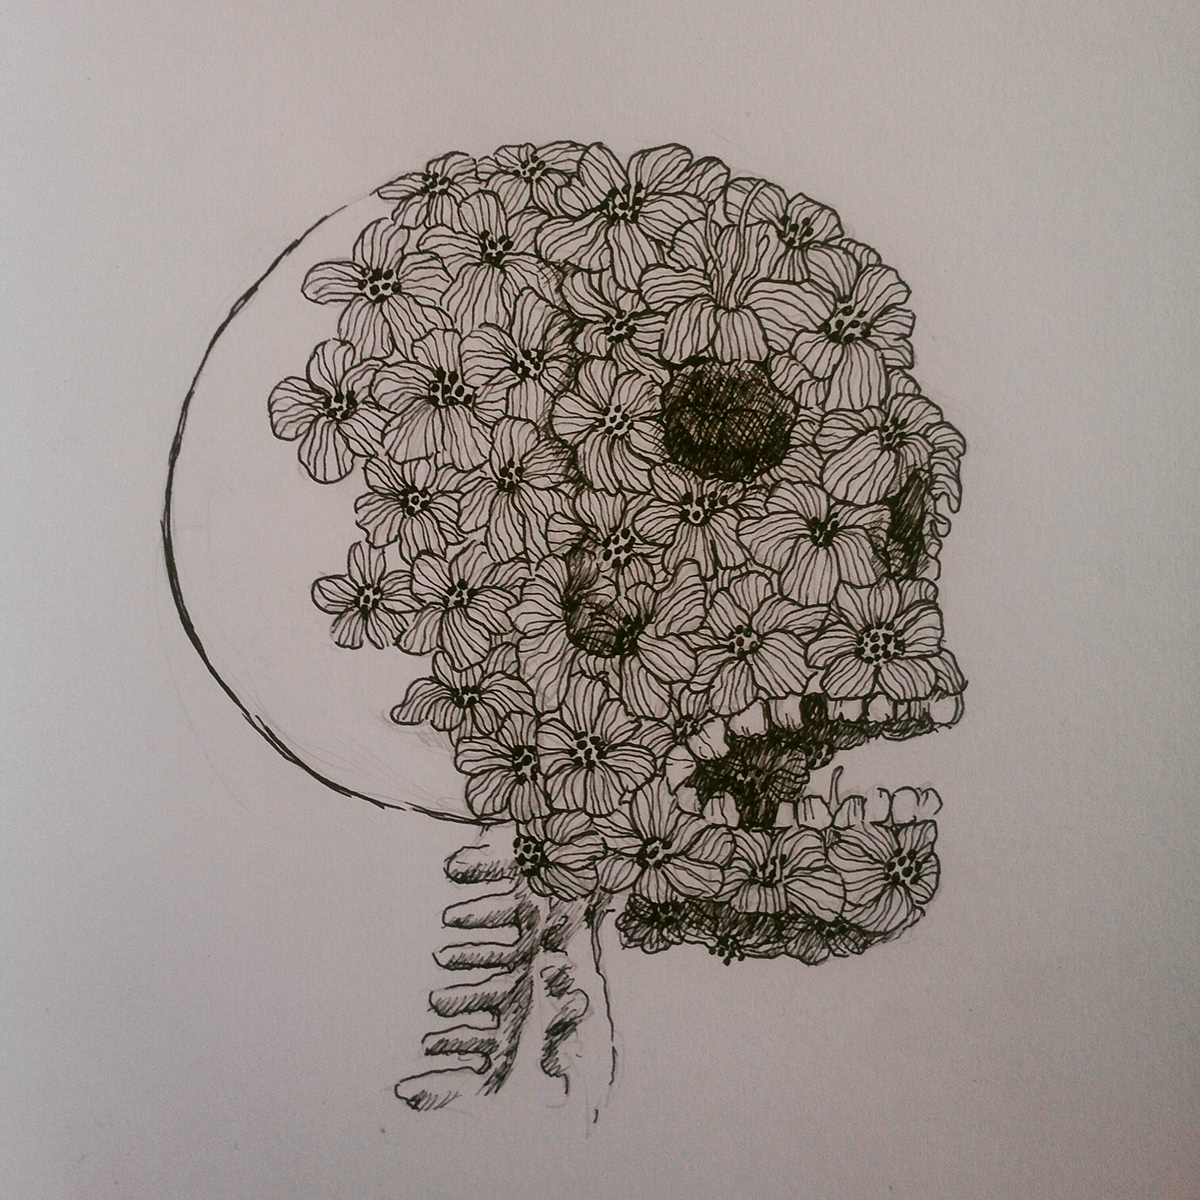 art artist Illustrator flower skull words feelings design sketch